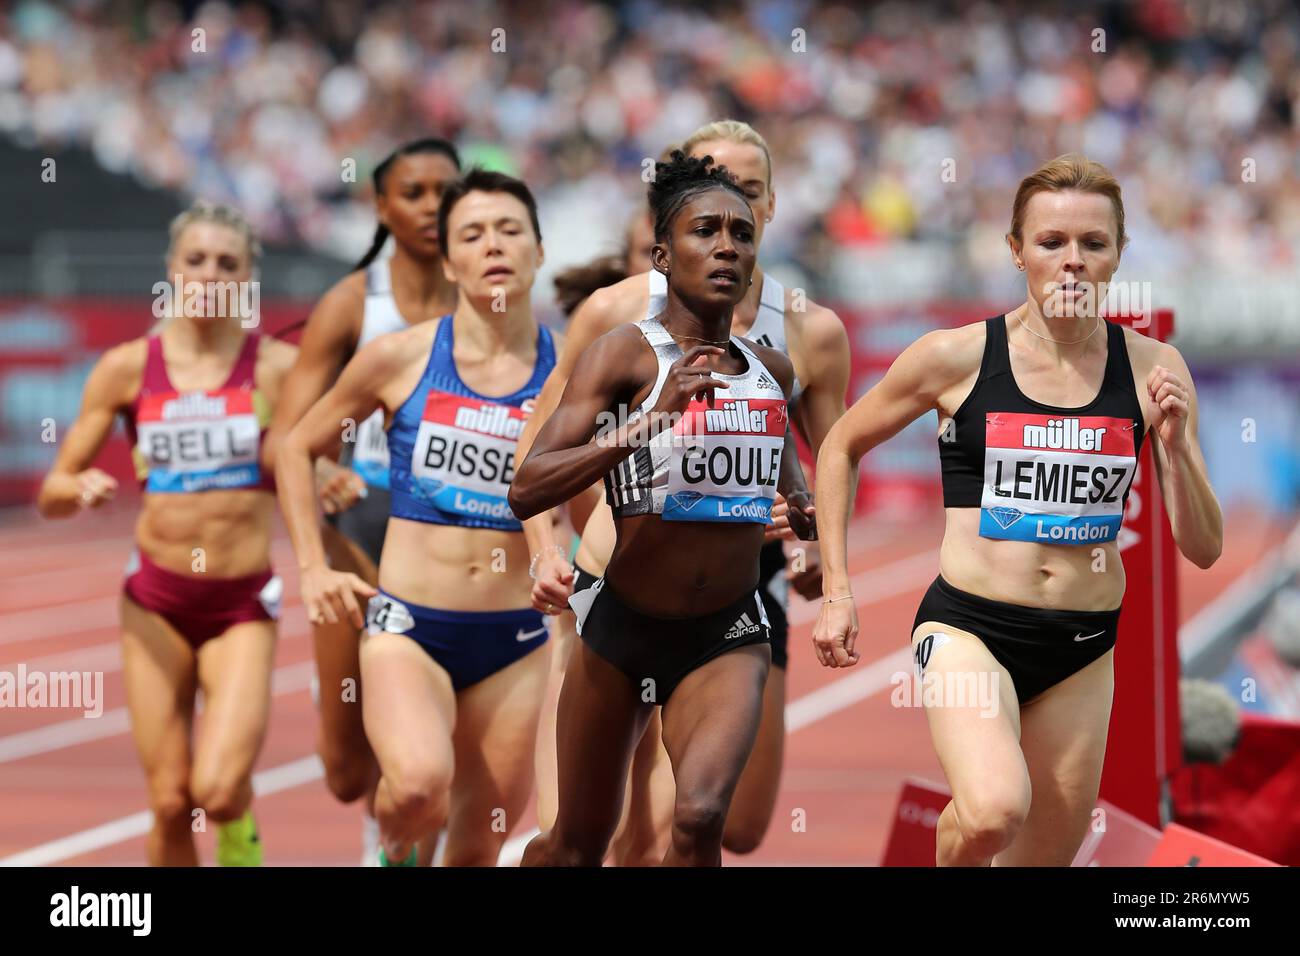 Catriona BISSET (Australien), Natoya GOULE (Jamaika), Aneta LEMIESZ (Polen), die beim 800m. Finale der Frauen im Jahr 2019 teilnehmen, IAAF Diamond League, Jubiläumsspiele, Queen Elizabeth Olympic Park, Stratford, London, Großbritannien. Stockfoto